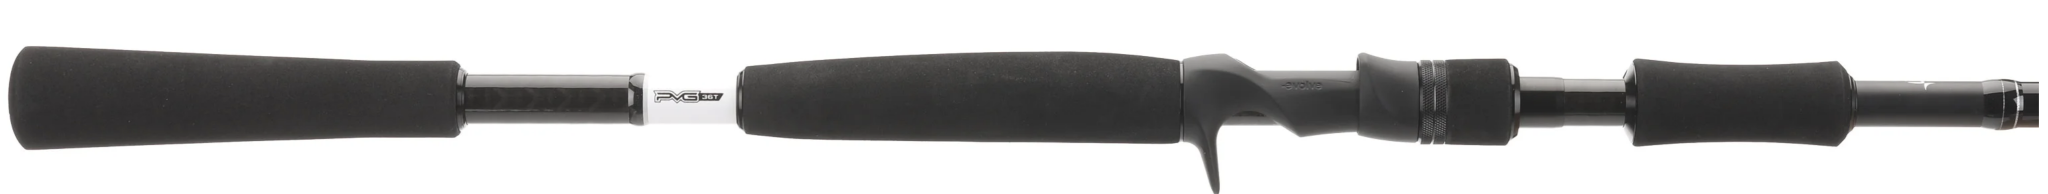 Omen Black Swimbait Casting Rod